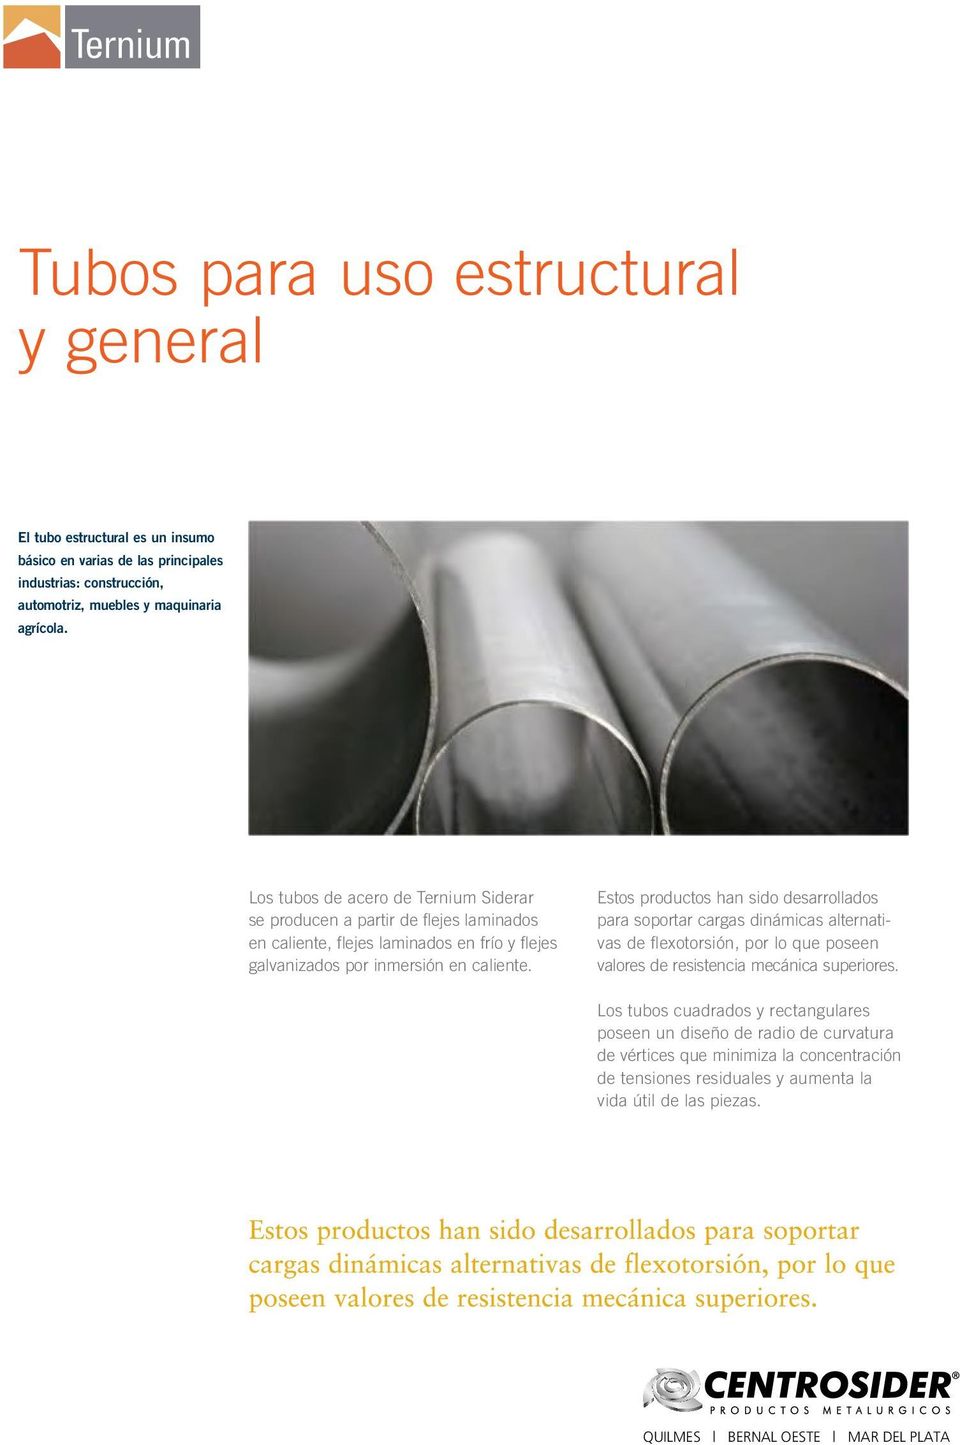 Los tubos de acero de Ternium Siderar se producen a partir de flejes laminados en caliente, flejes laminados en frío y flejes galvanizados por inmersión en caliente.